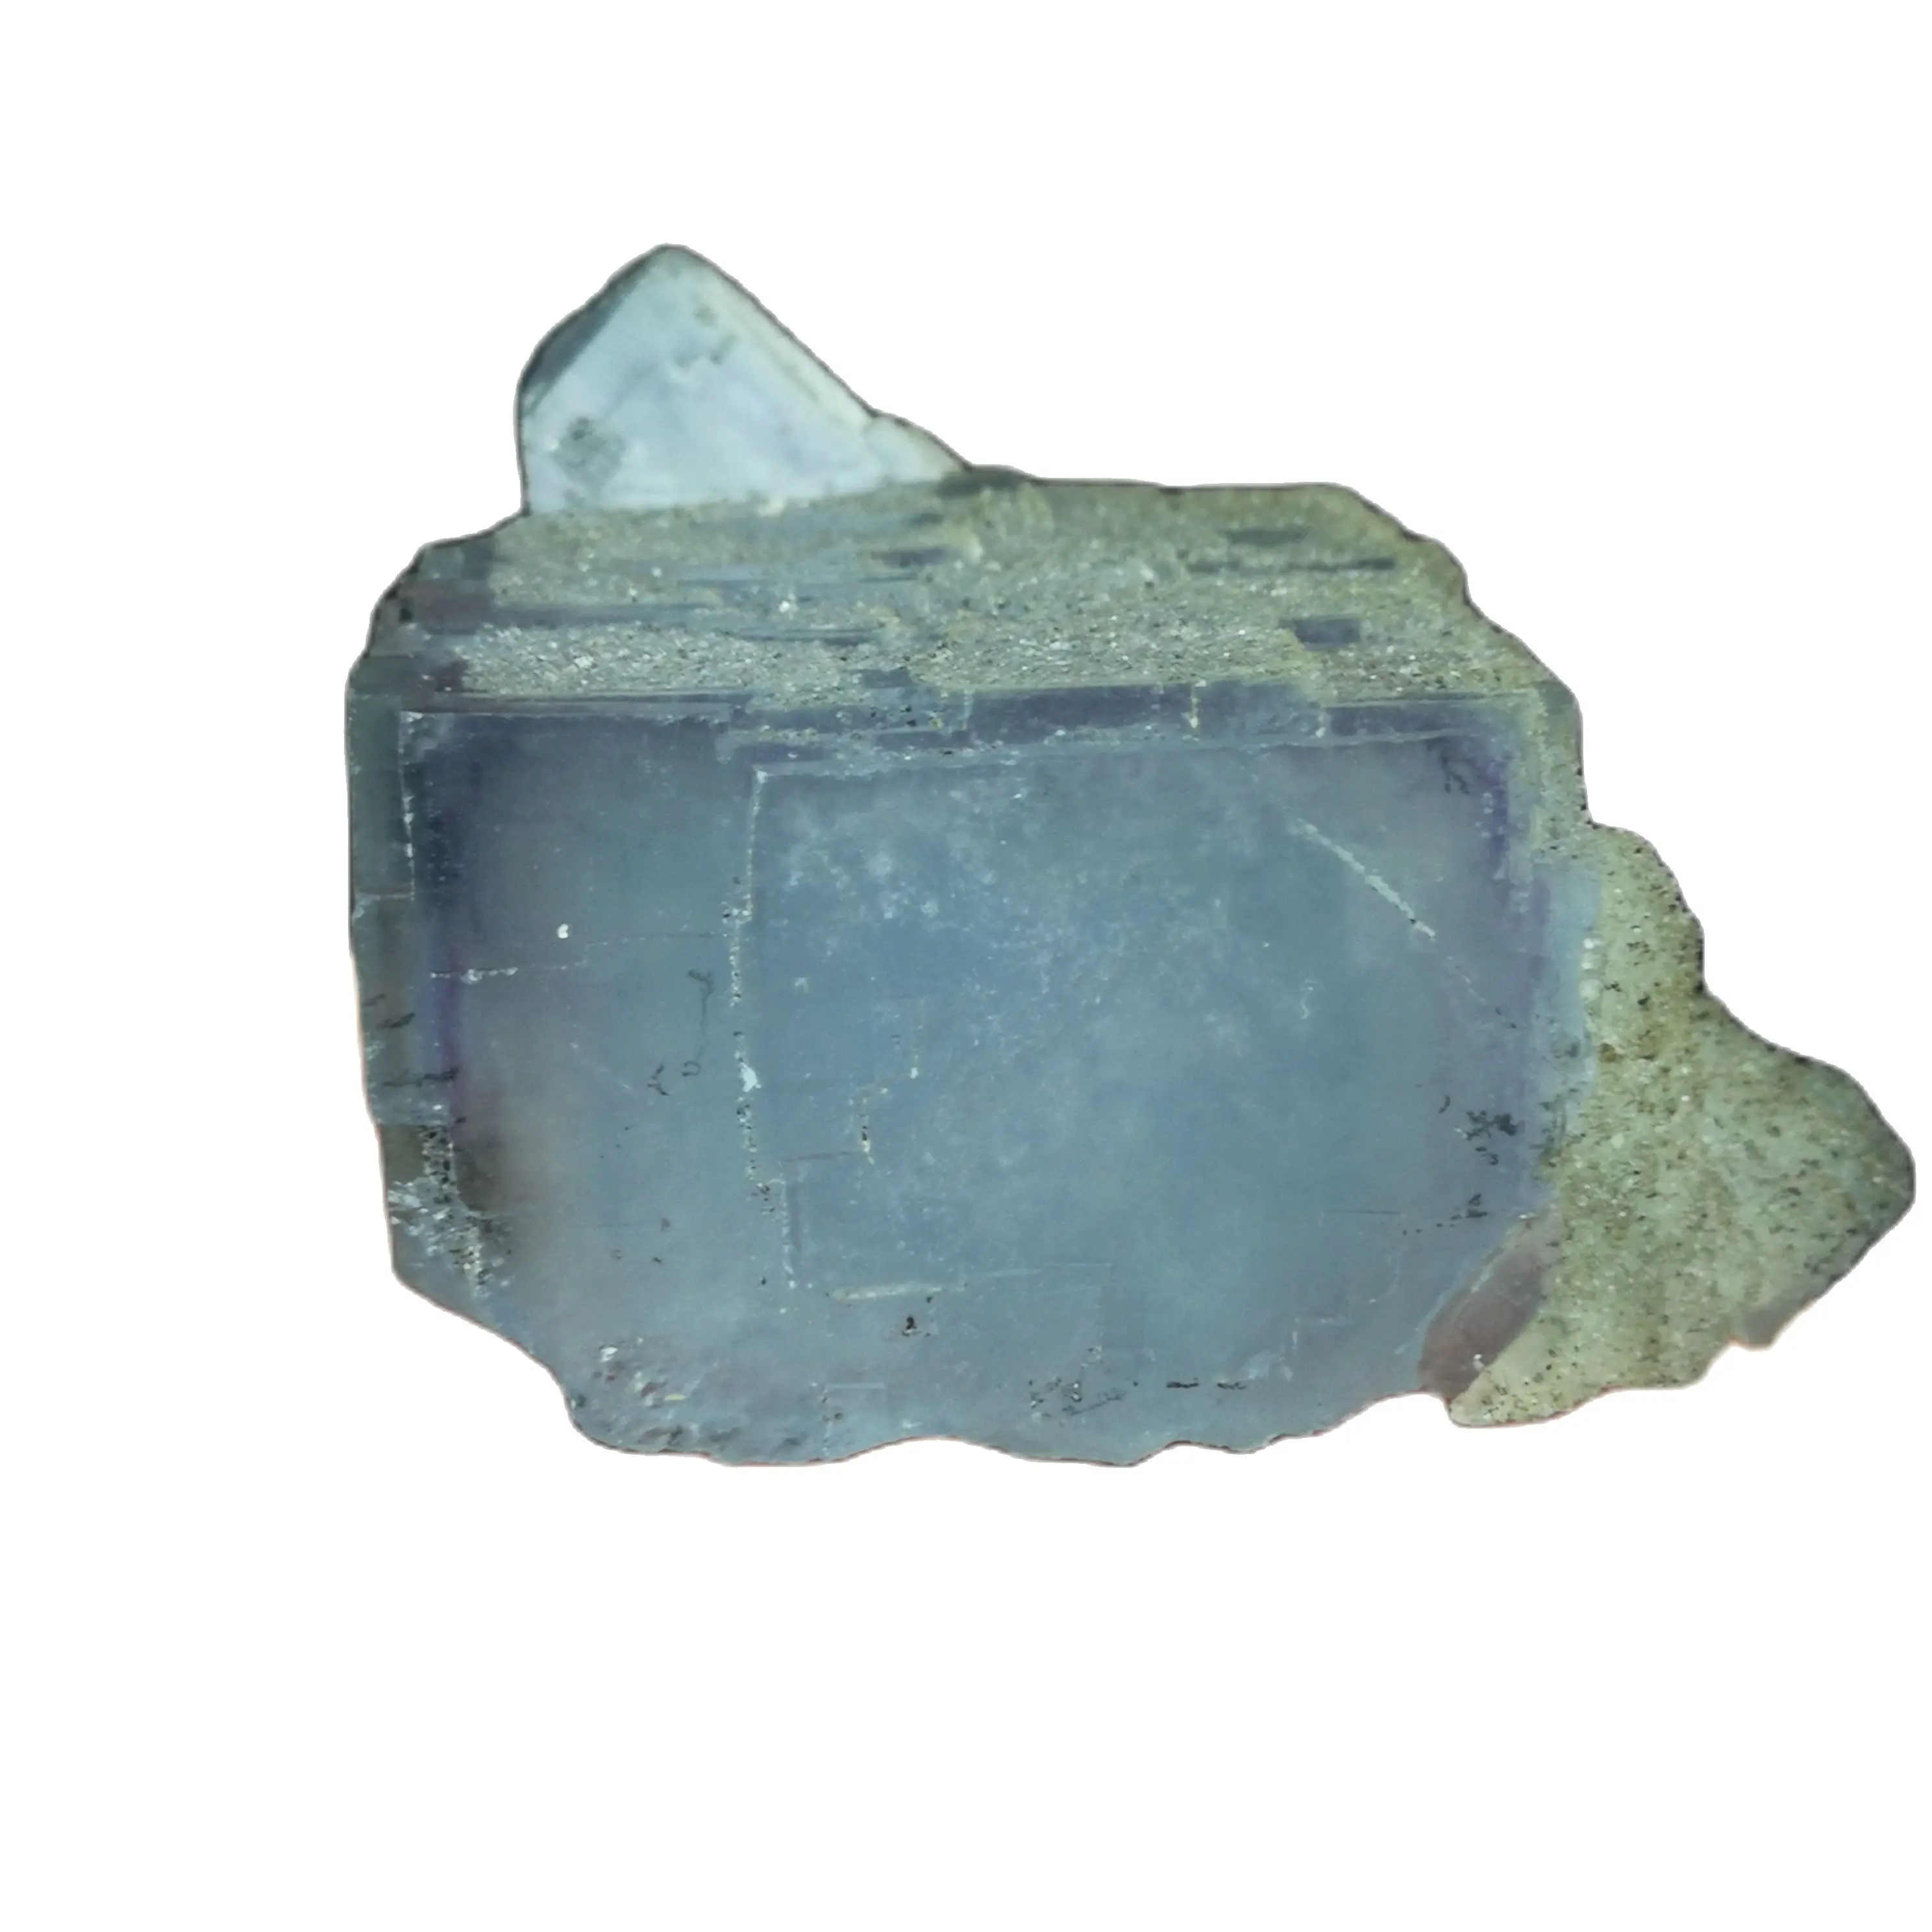 

101,0 натуральные образцы минералов флюорита из морской синей скалы, домашние предметы интерьера